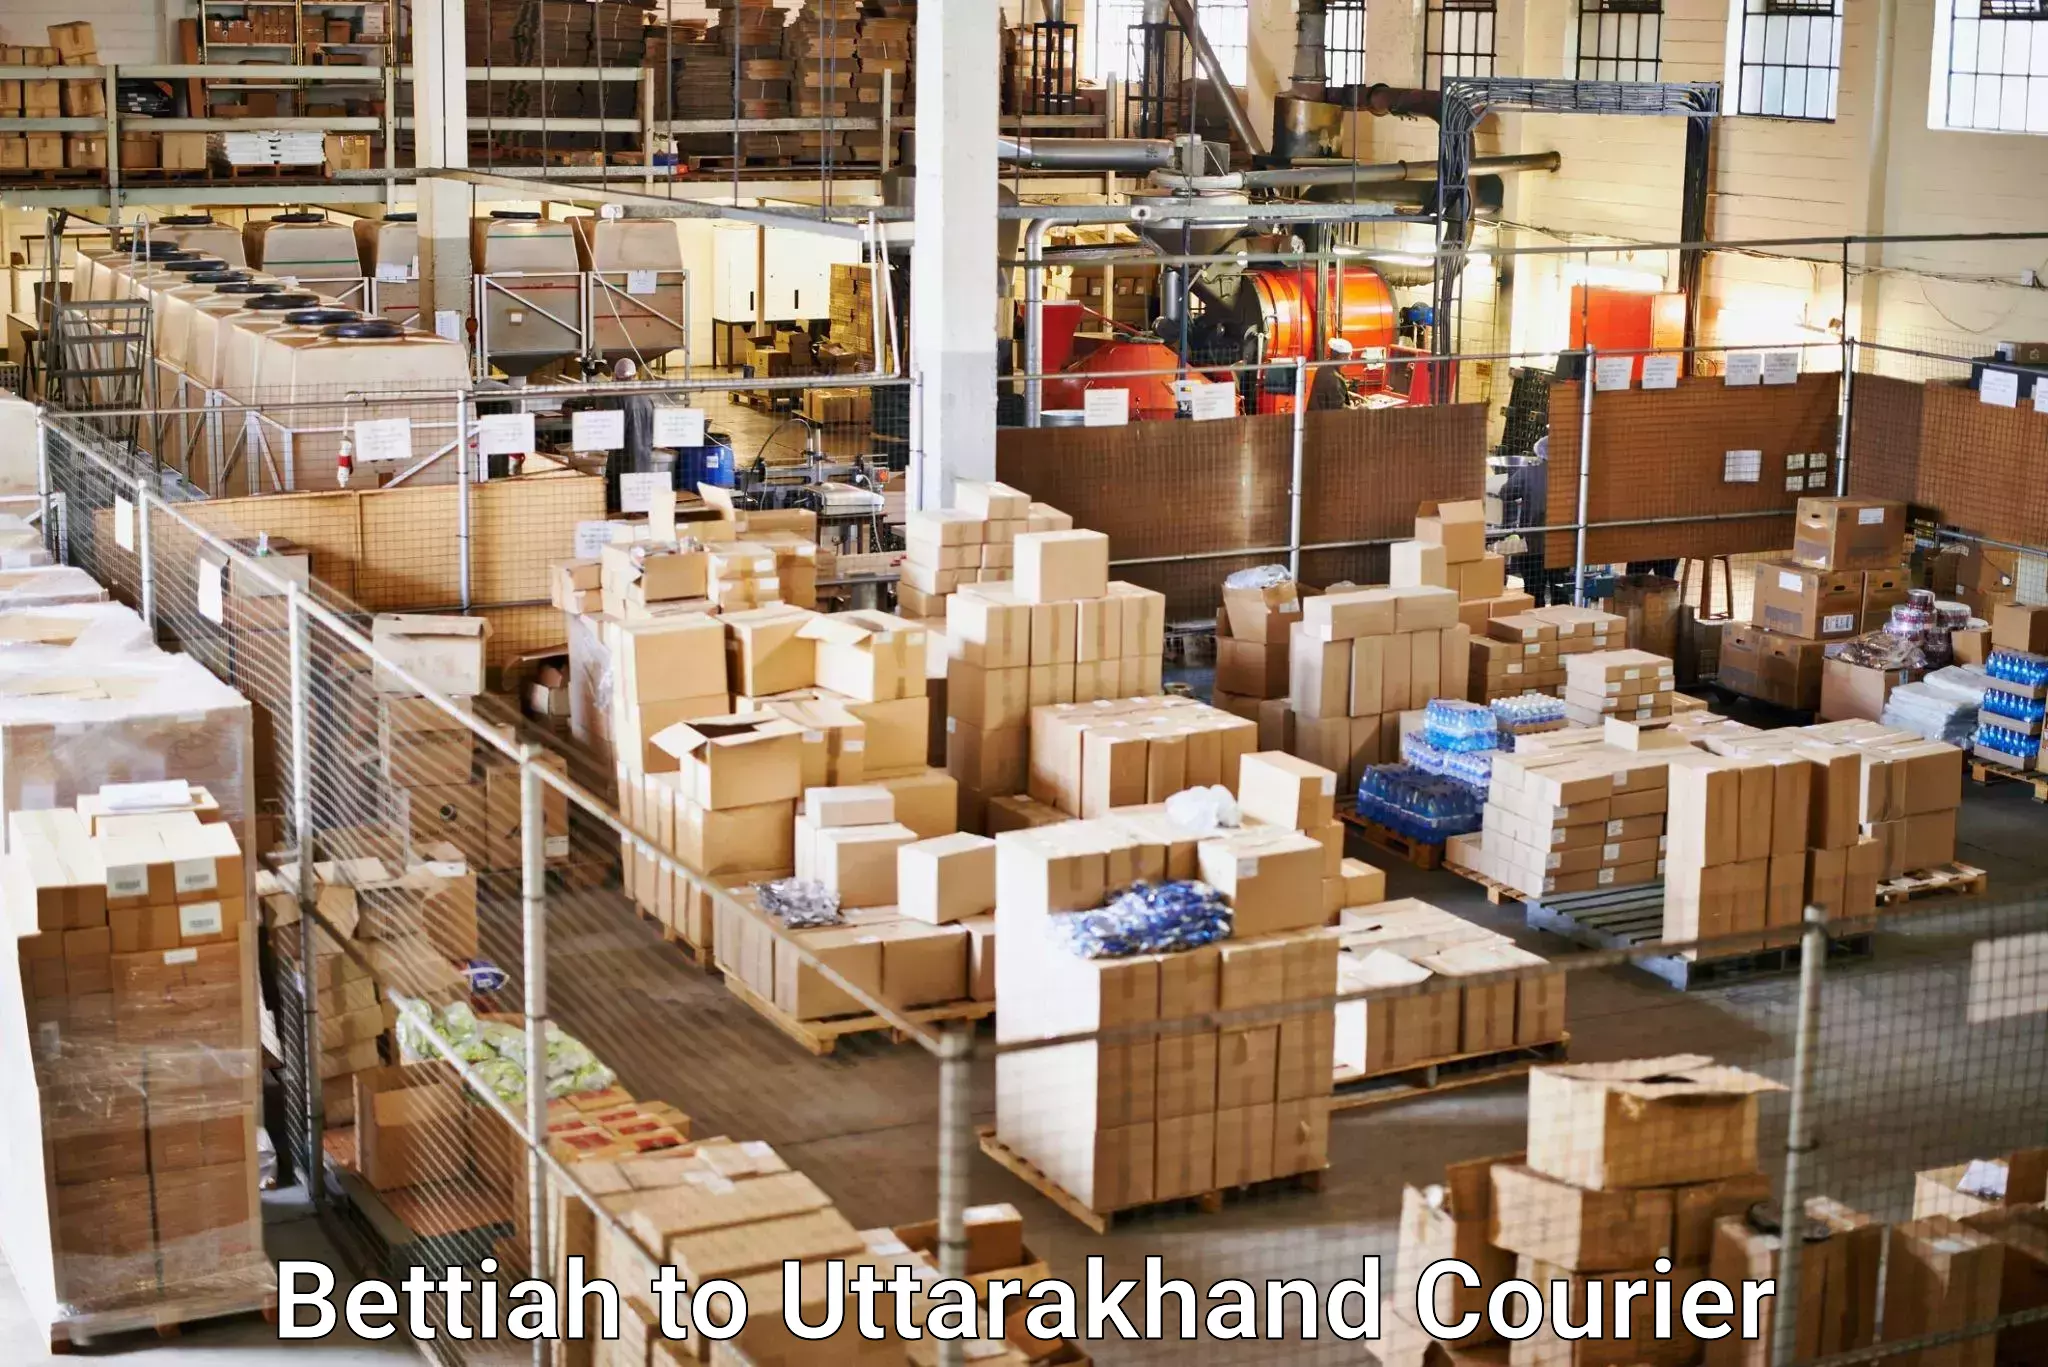 Pharmaceutical courier Bettiah to Pithoragarh